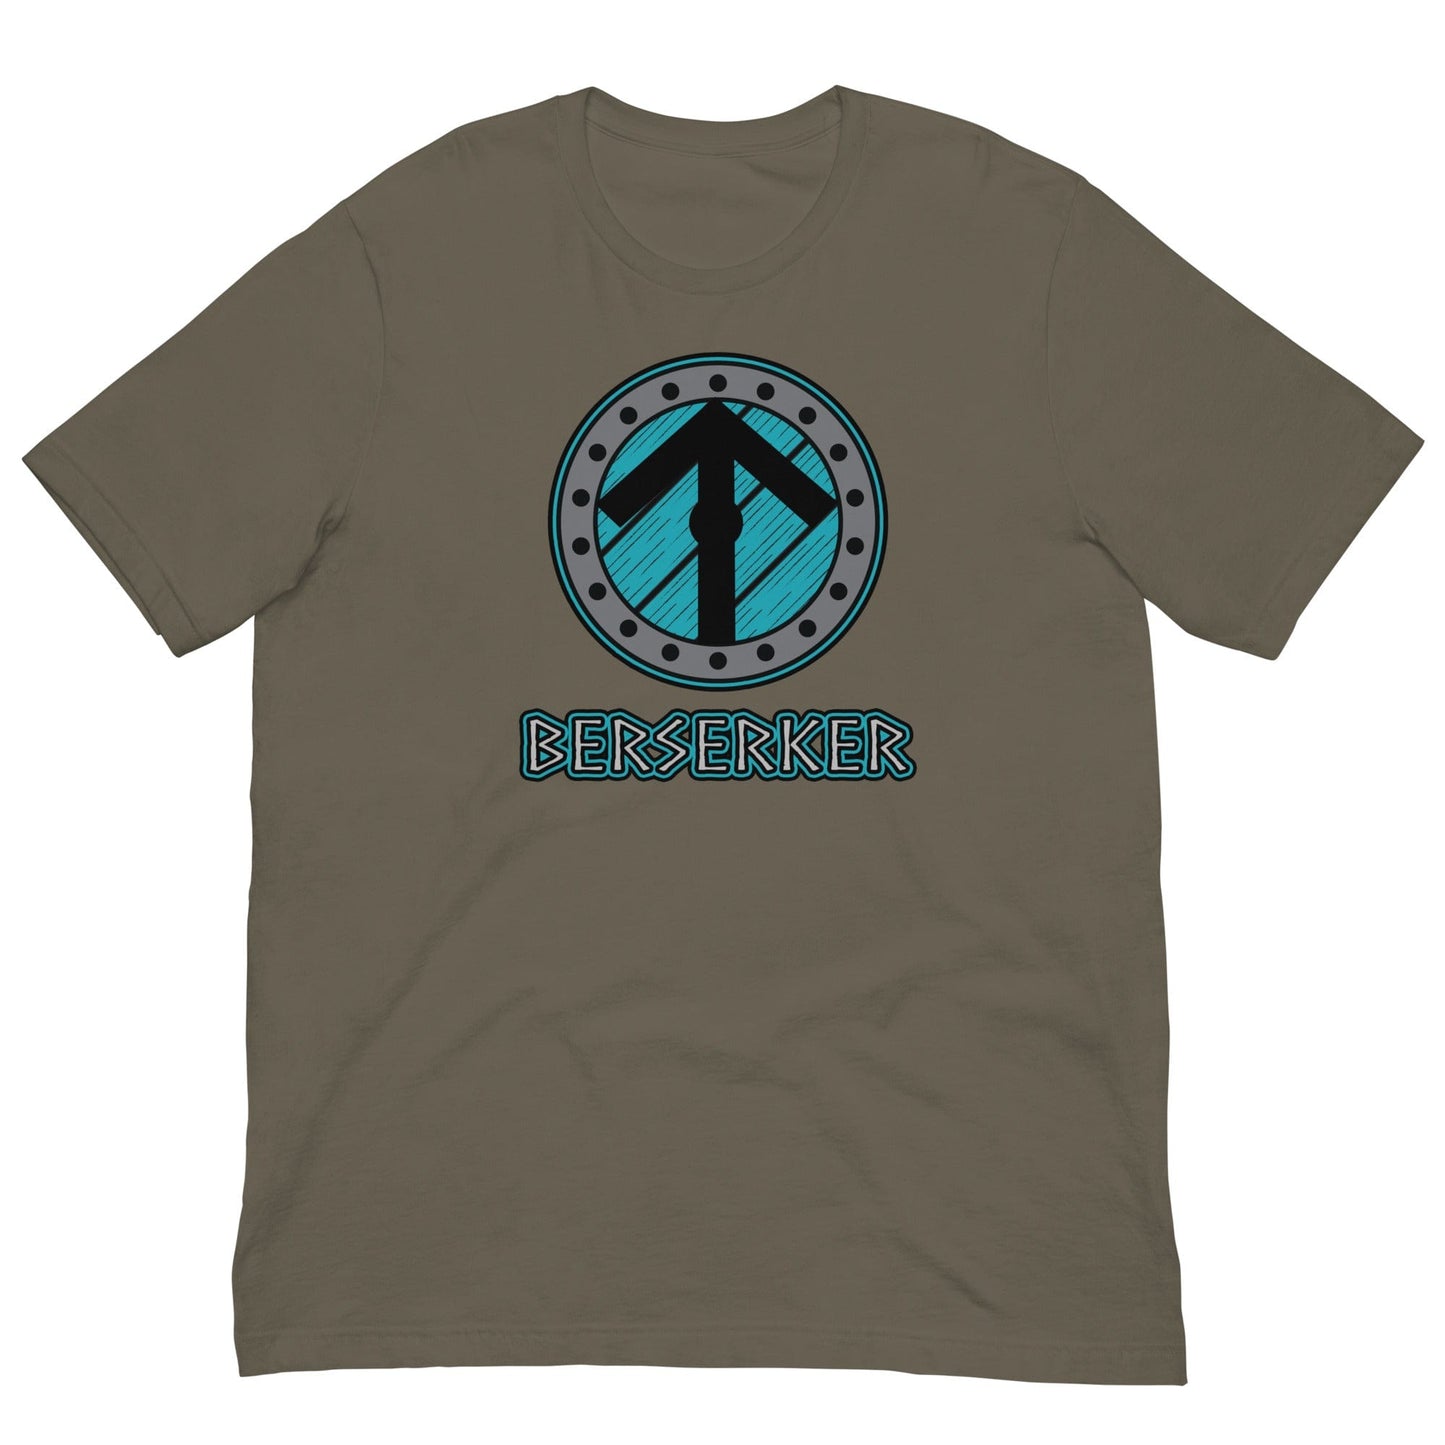 Berserker Viking T-shirt Army / S